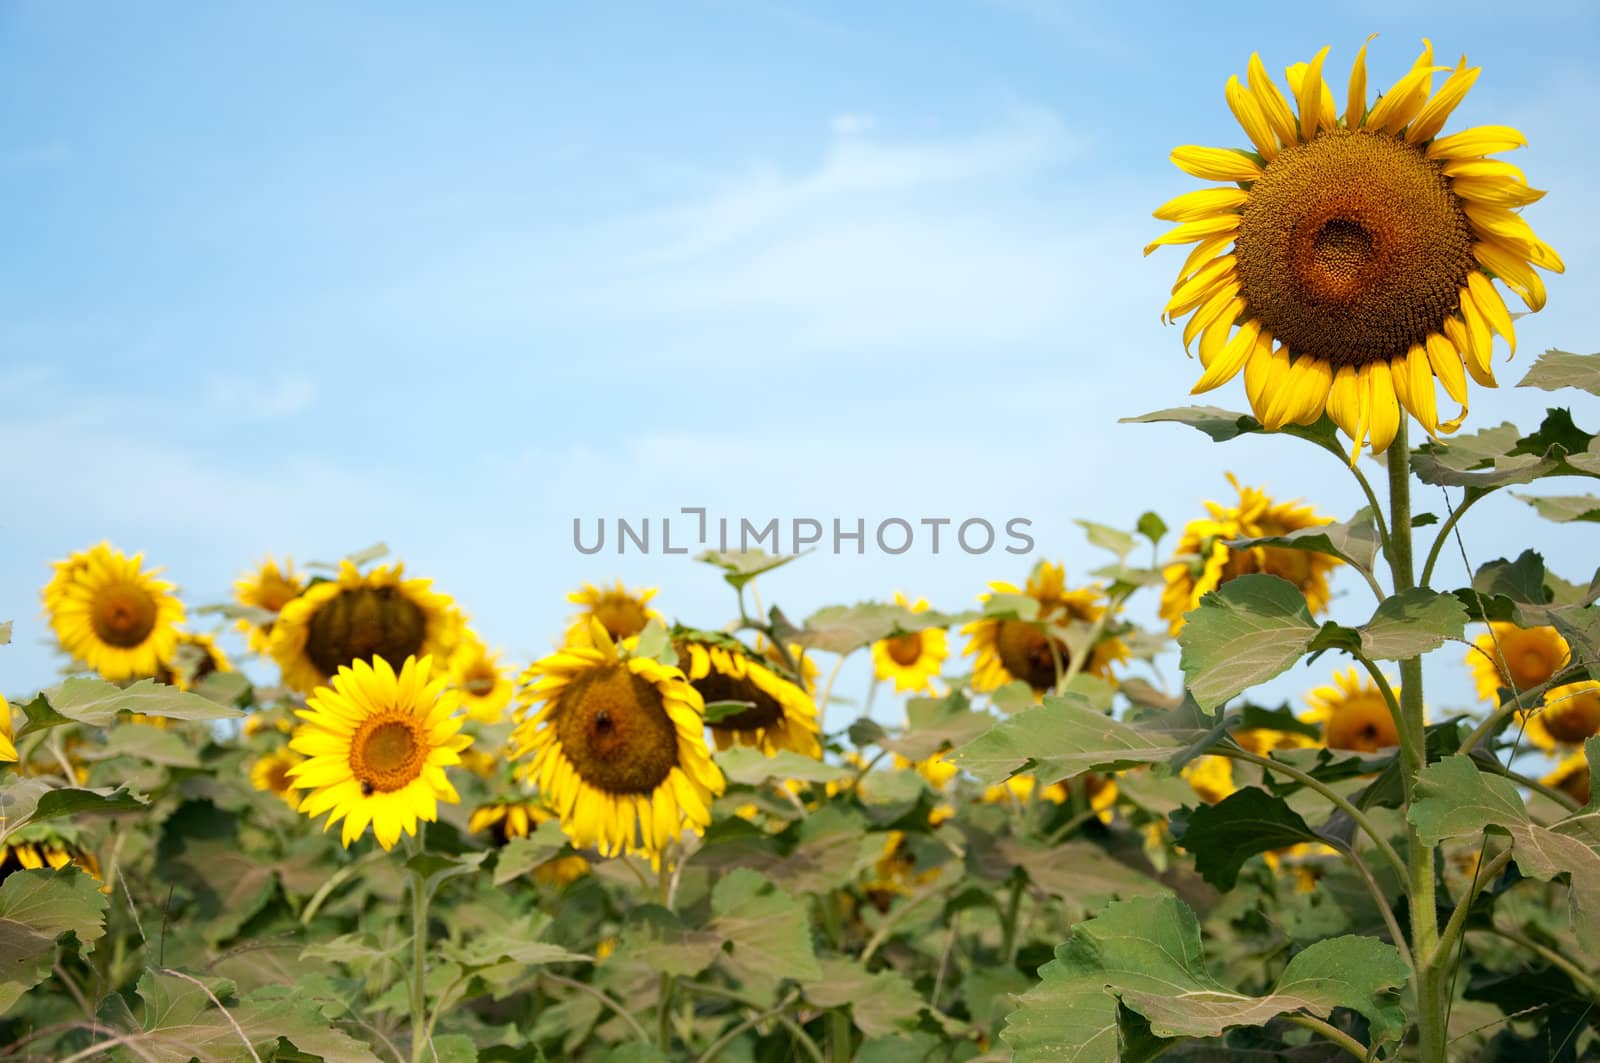 Sunflowers in Field by dehooks